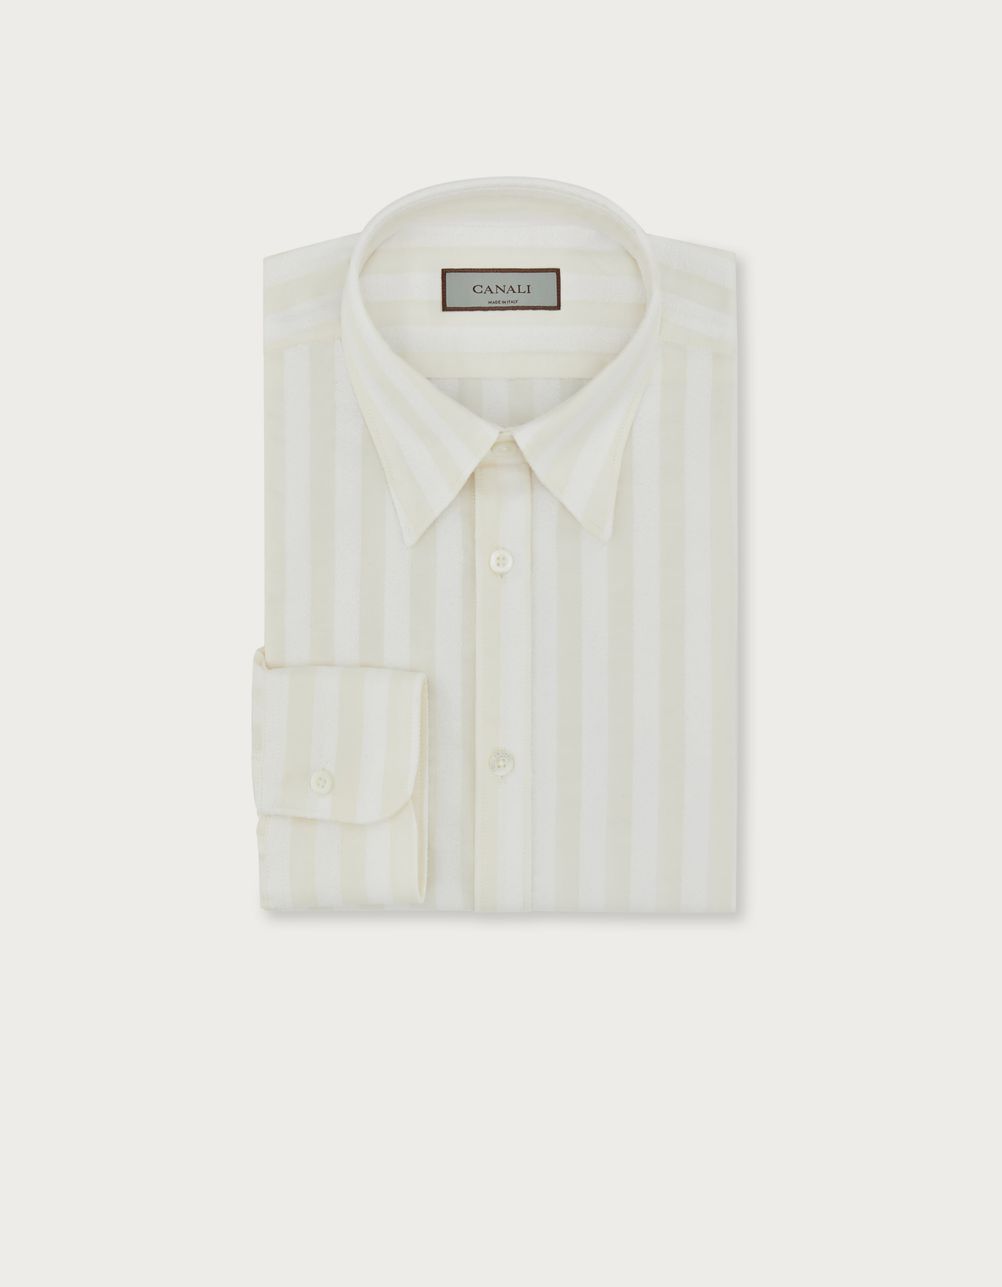 Camisa slim fit de algodón a rayas beige y blanca 